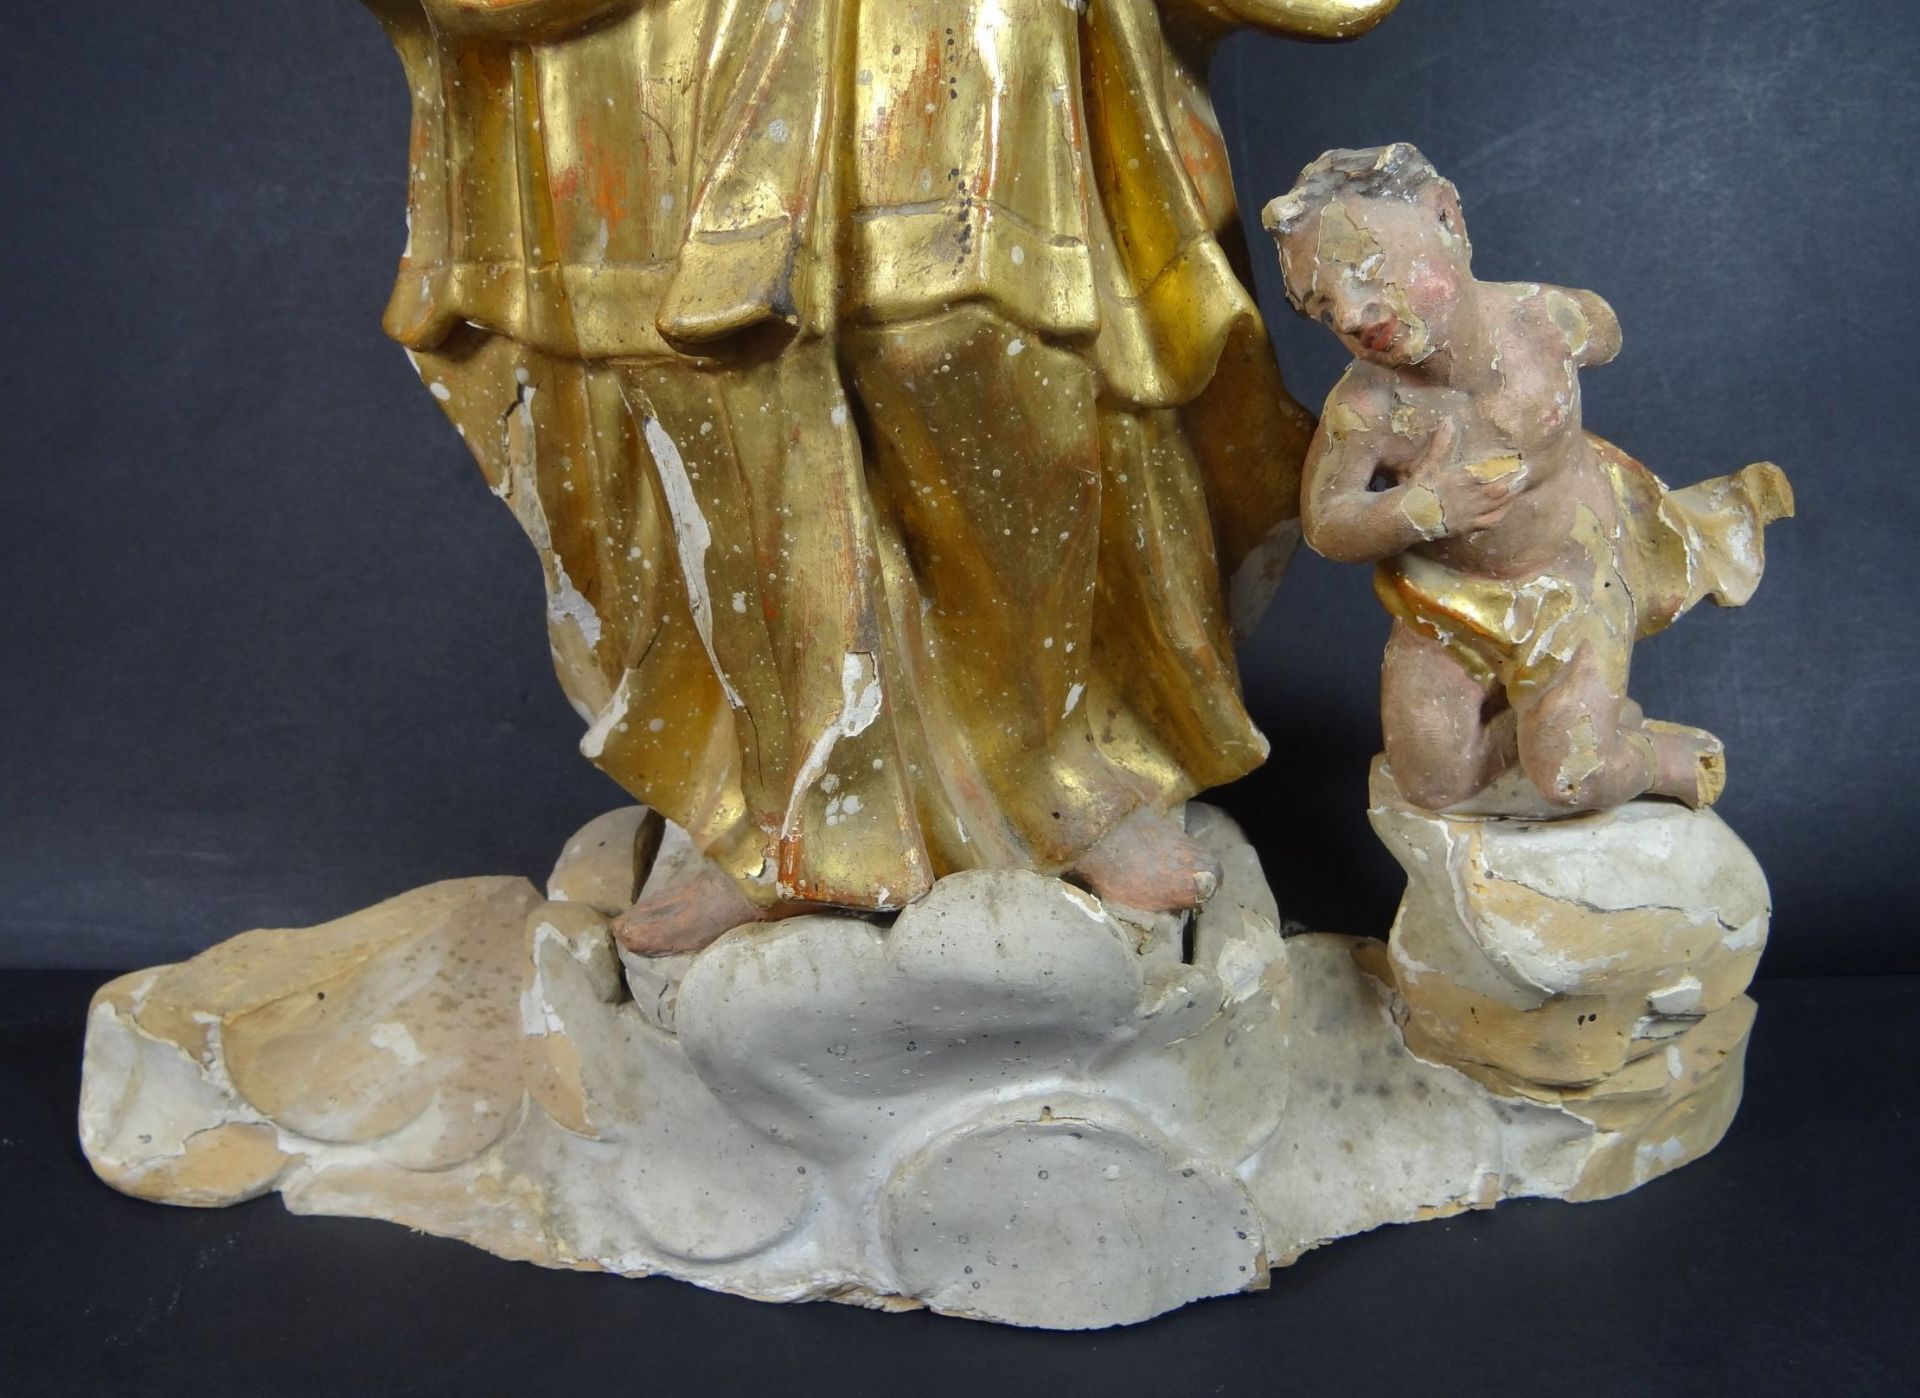 Holzskulptur "Maria mit Kind und Putto" Reste alter Fassung, wohl 18.Jhd., ein Putto seitlich fehlt, - Bild 3 aus 10